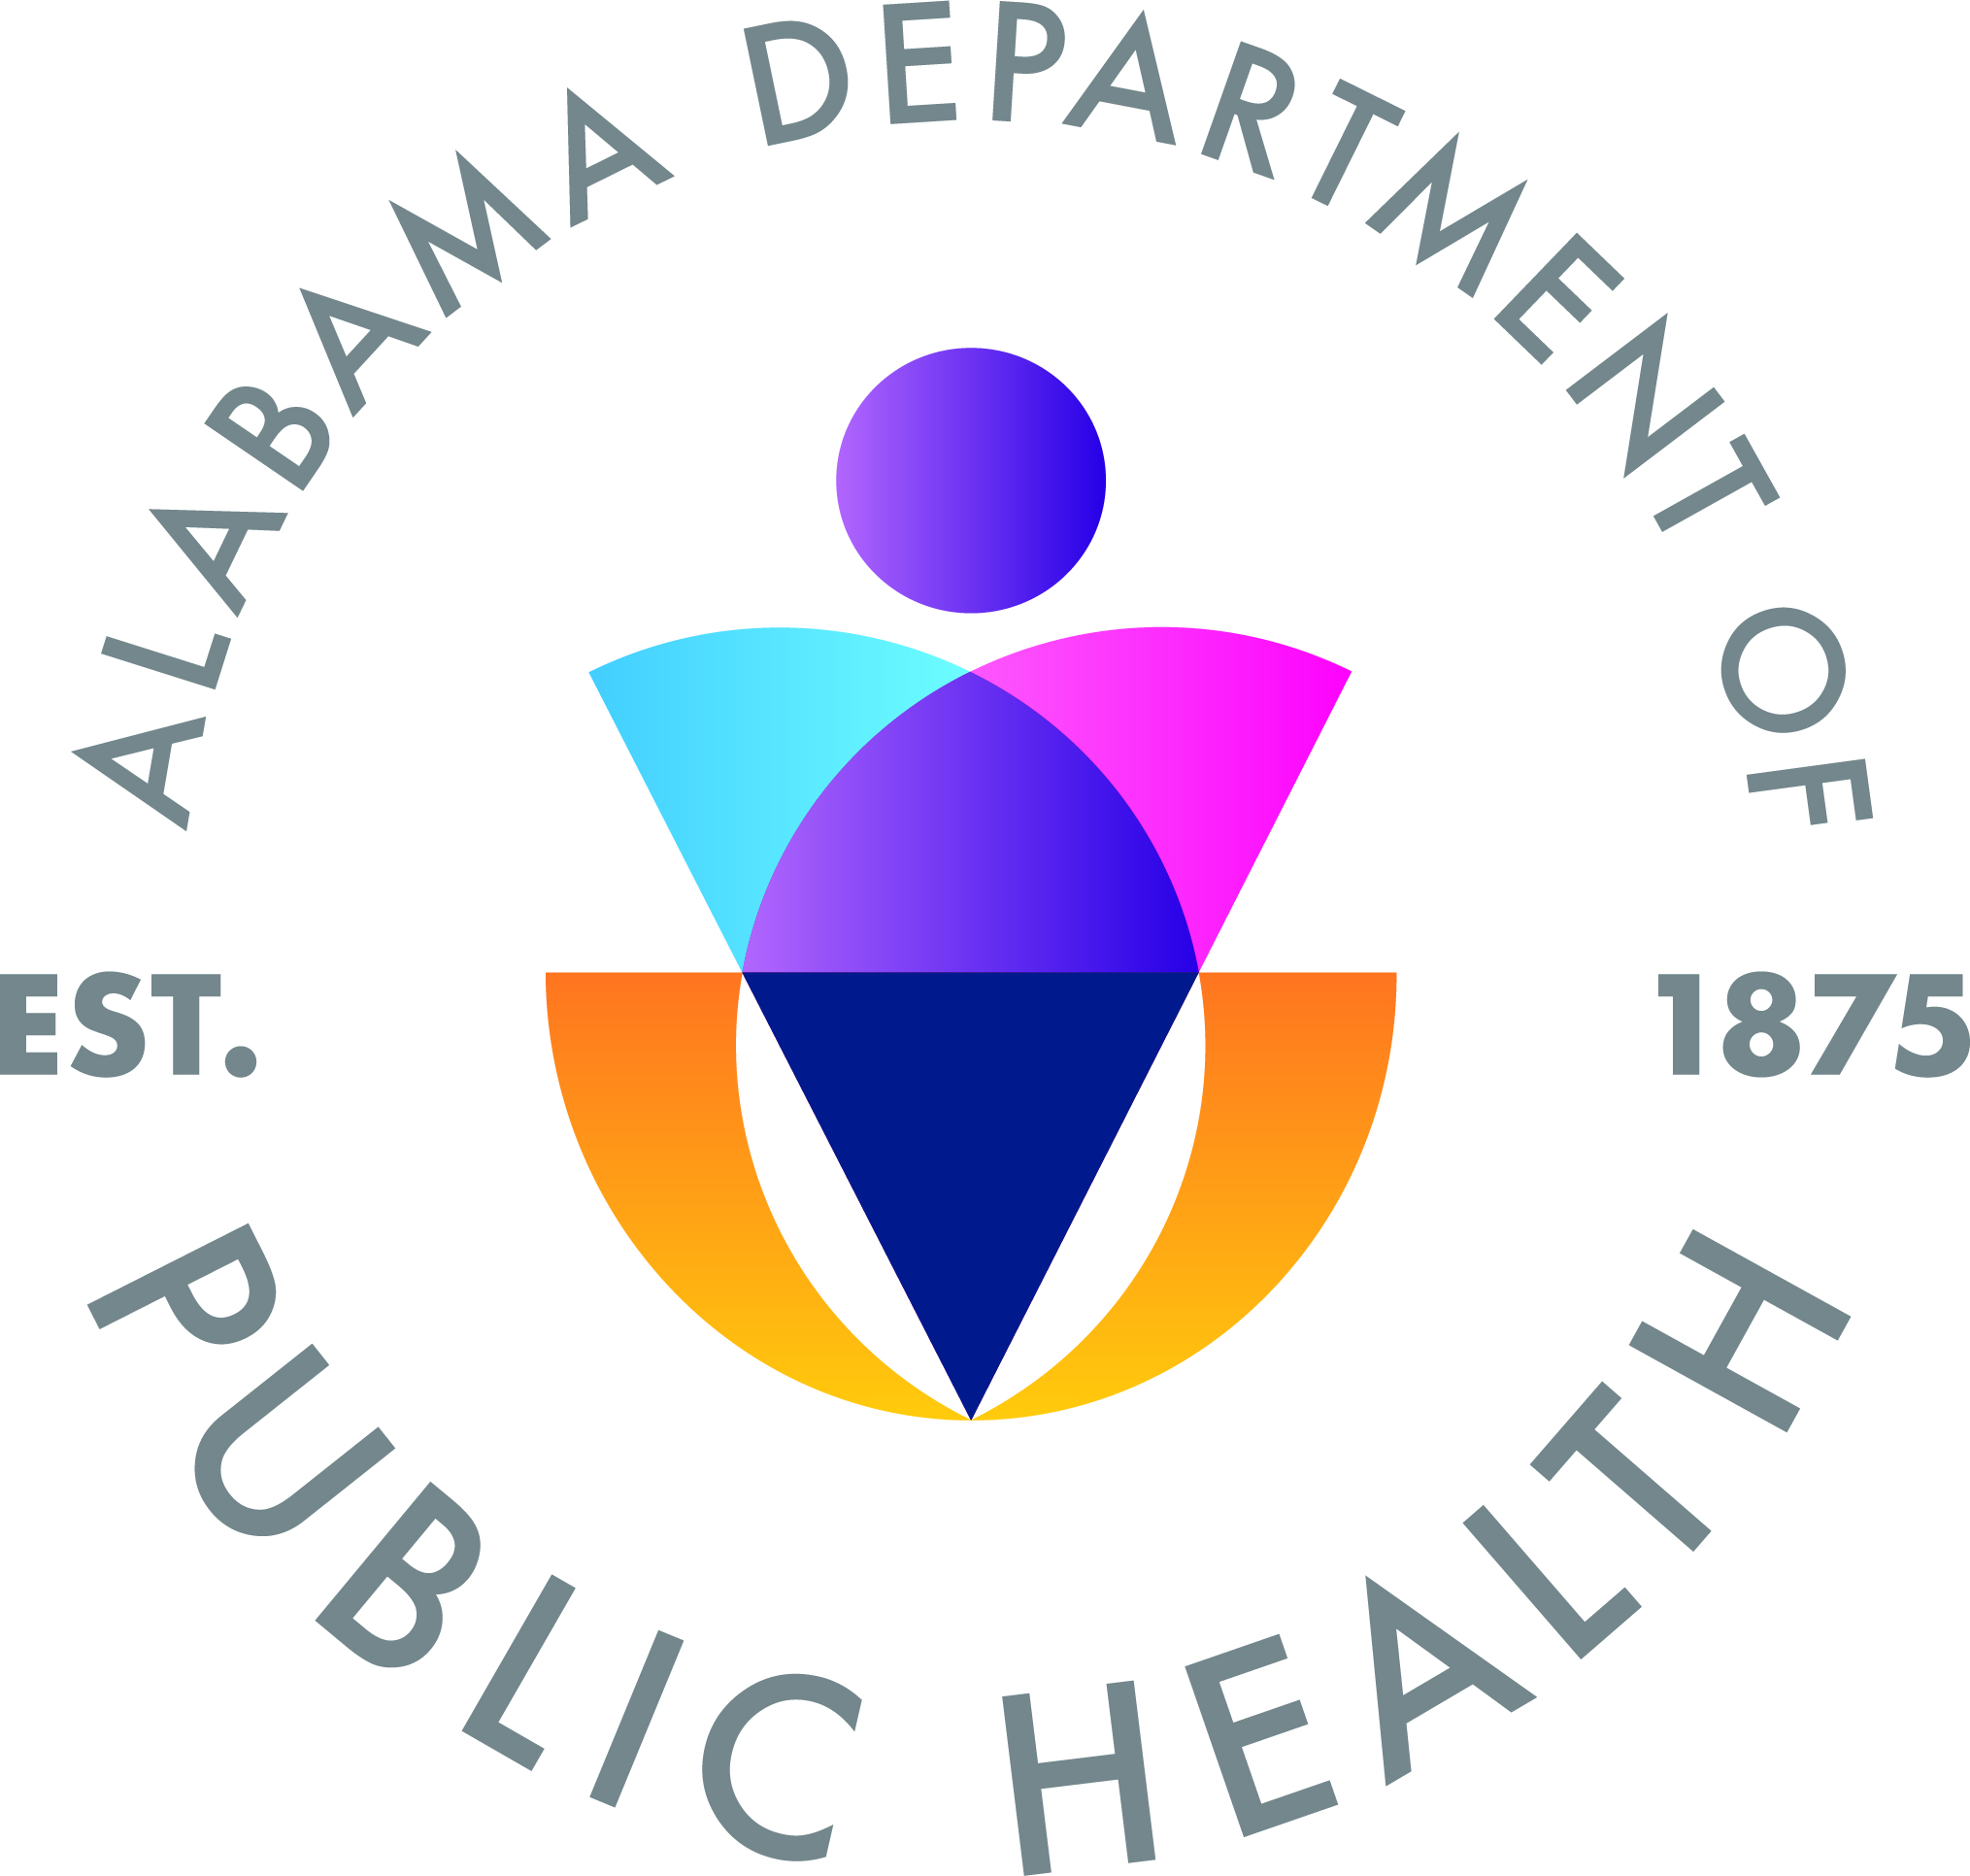 Alabama Department of Public Health